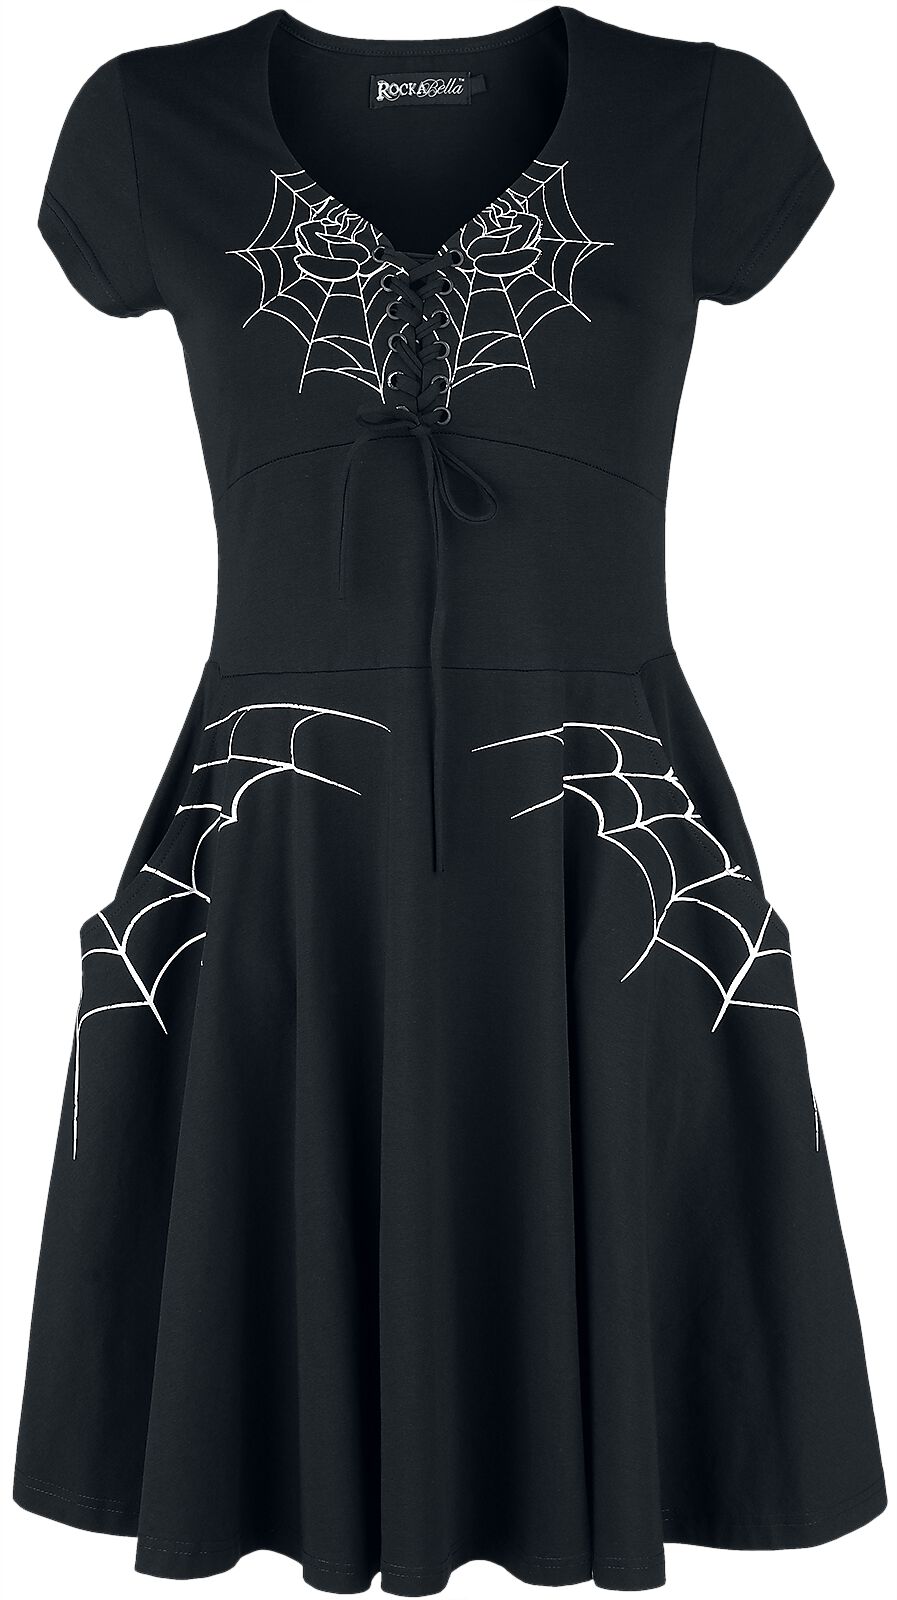 Robe courte Gothic de Rockabella - Robe Black Widow - S à L - pour Femme - noir/blanc